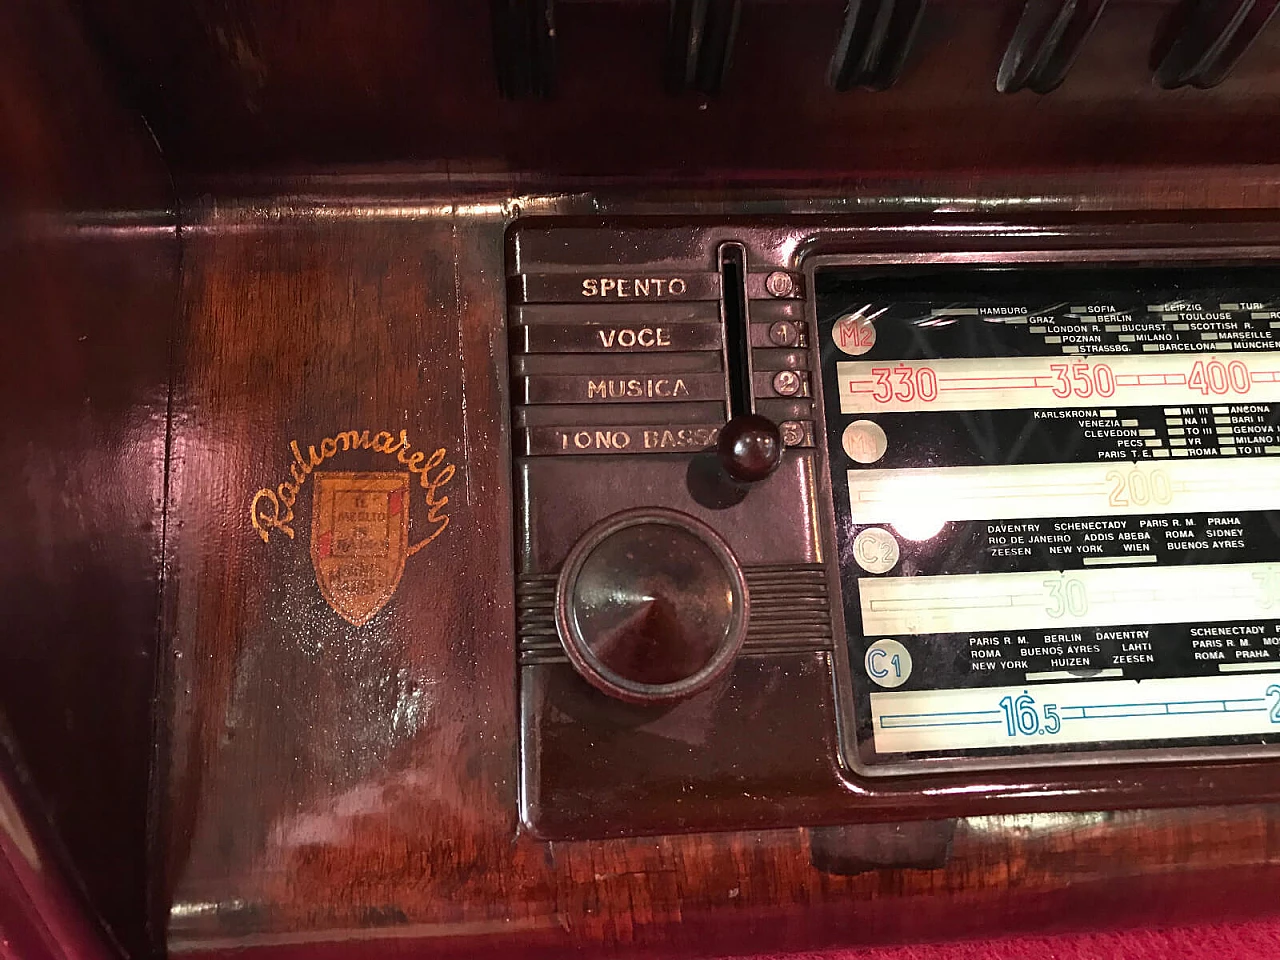 Post-war radio model "9A55" by Marelli 4